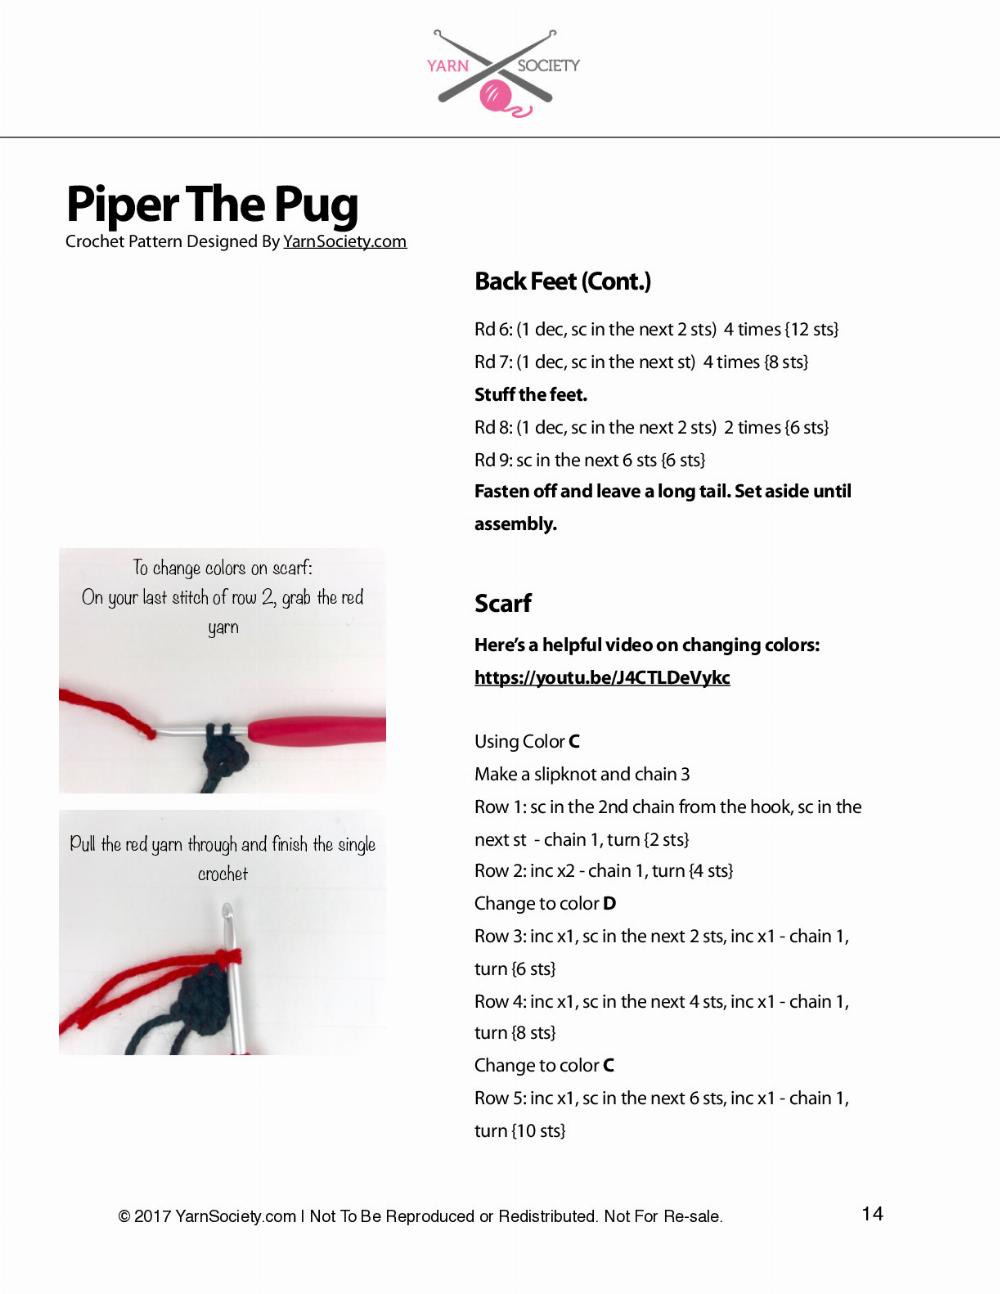 Piper The Pug Born crochet pattern